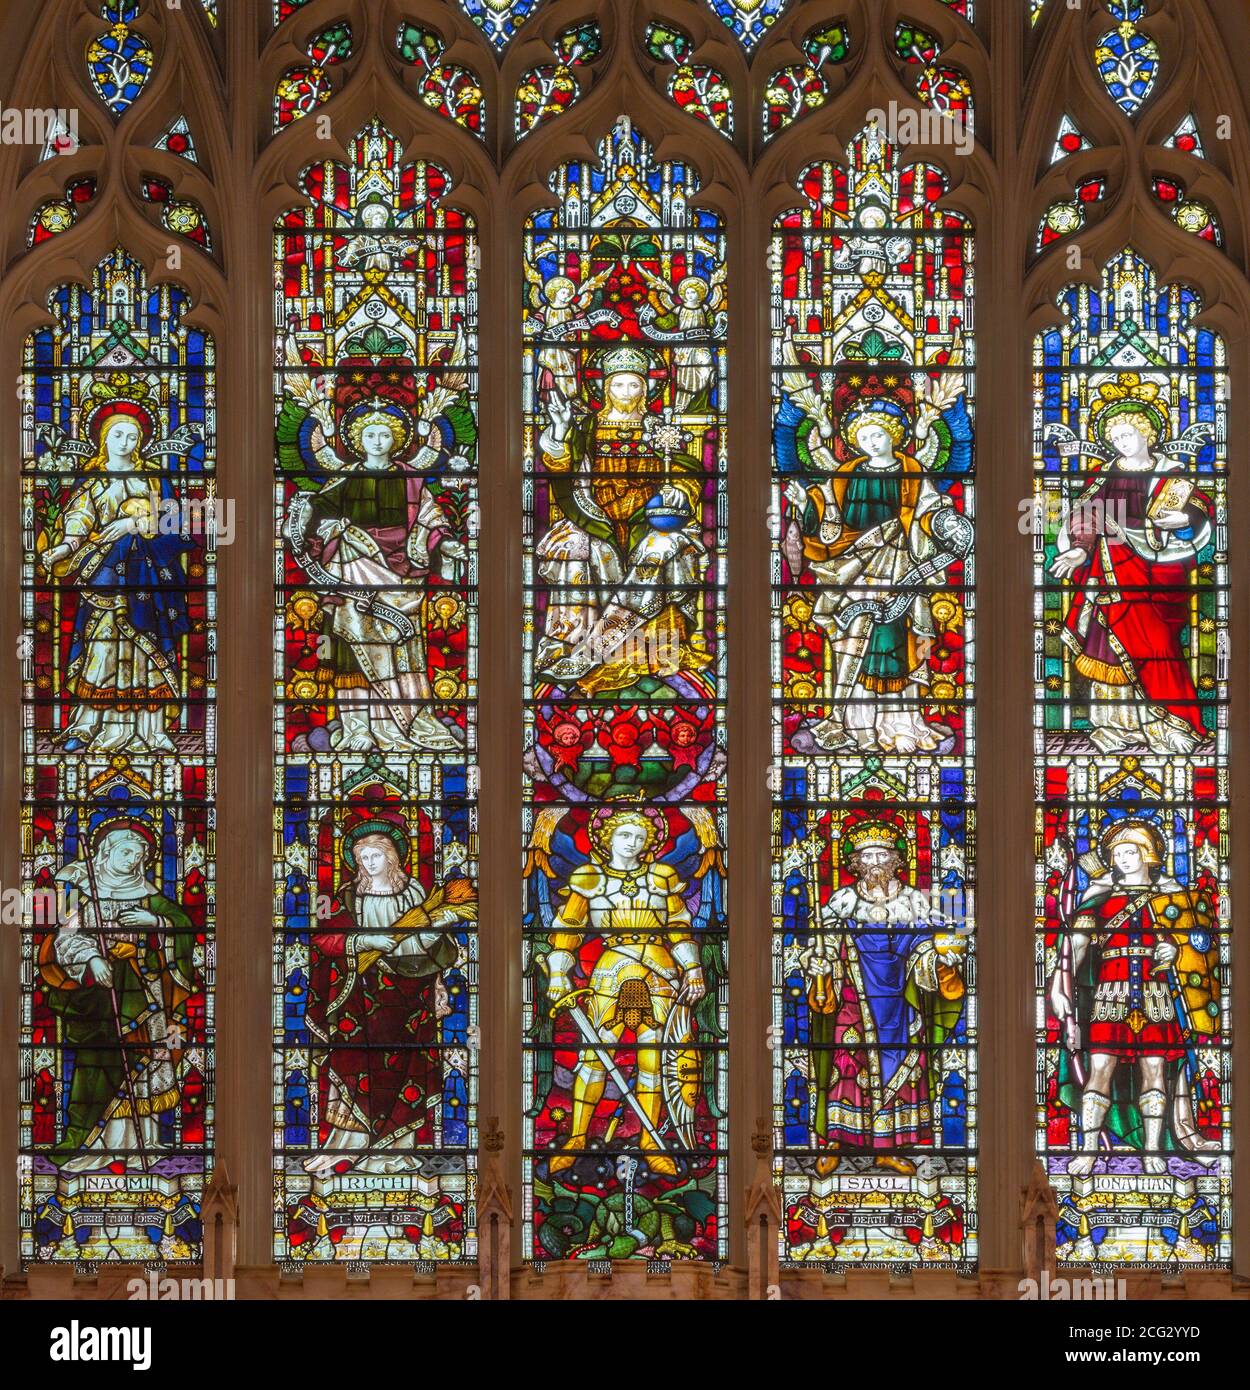 LONDRA, GRAN BRETAGNA - 17 SETTEMBRE 2017: L'altare principale e la vetrata nella chiesa di San Michele, piazza Chester (fine del f19. Sec.). Foto Stock